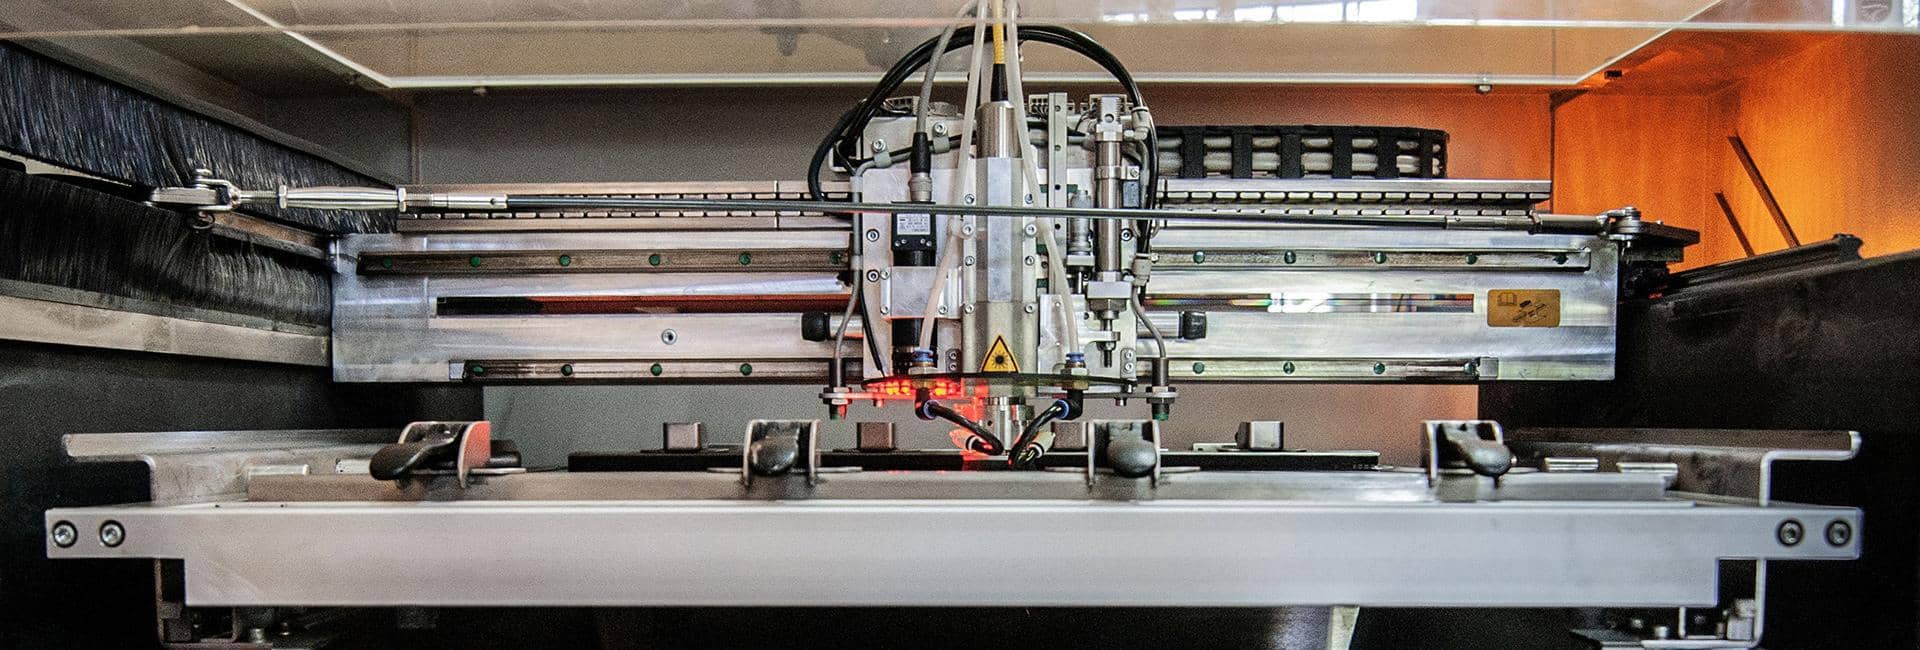 produkcja stalowych szablonów laserowych do nakładania pasty lutowniczej na obwody drukowane